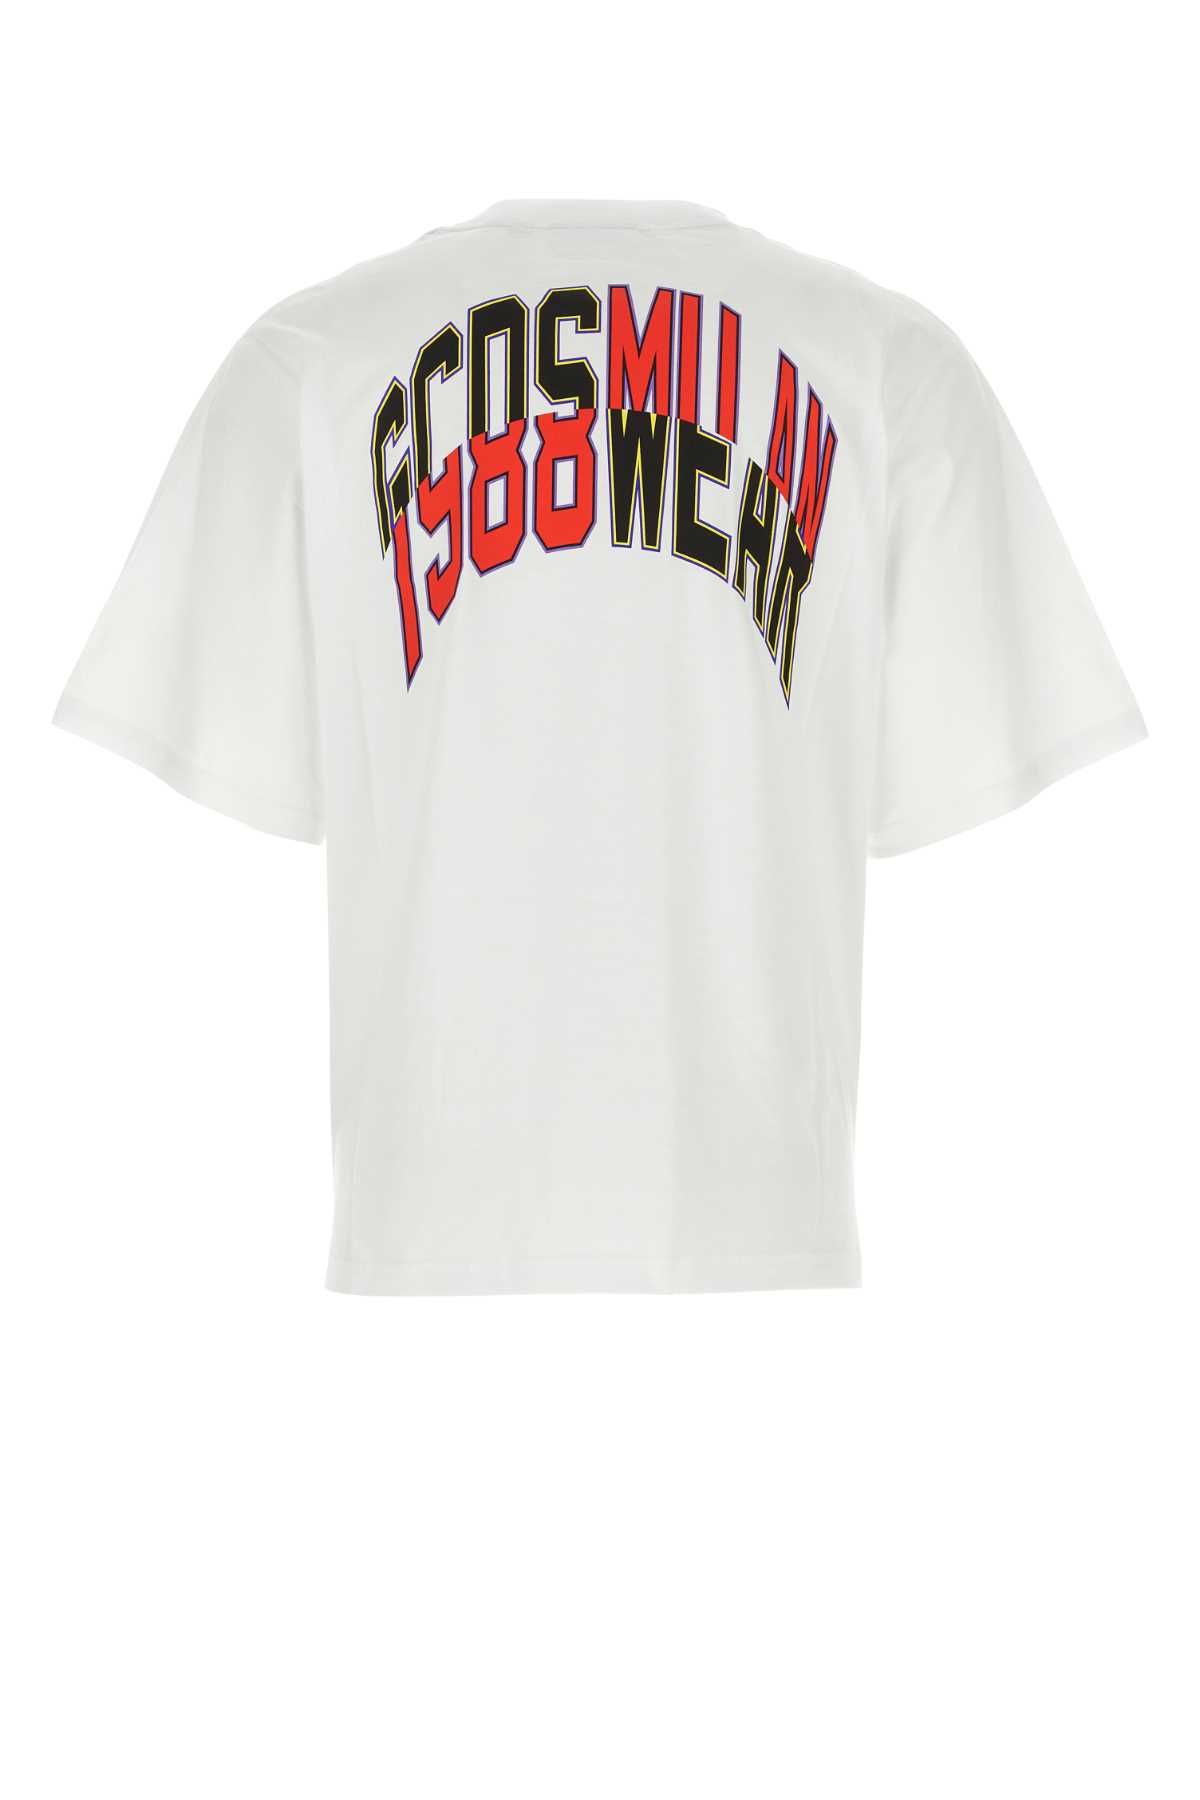 Shop Gcds White Cotton T-shirt